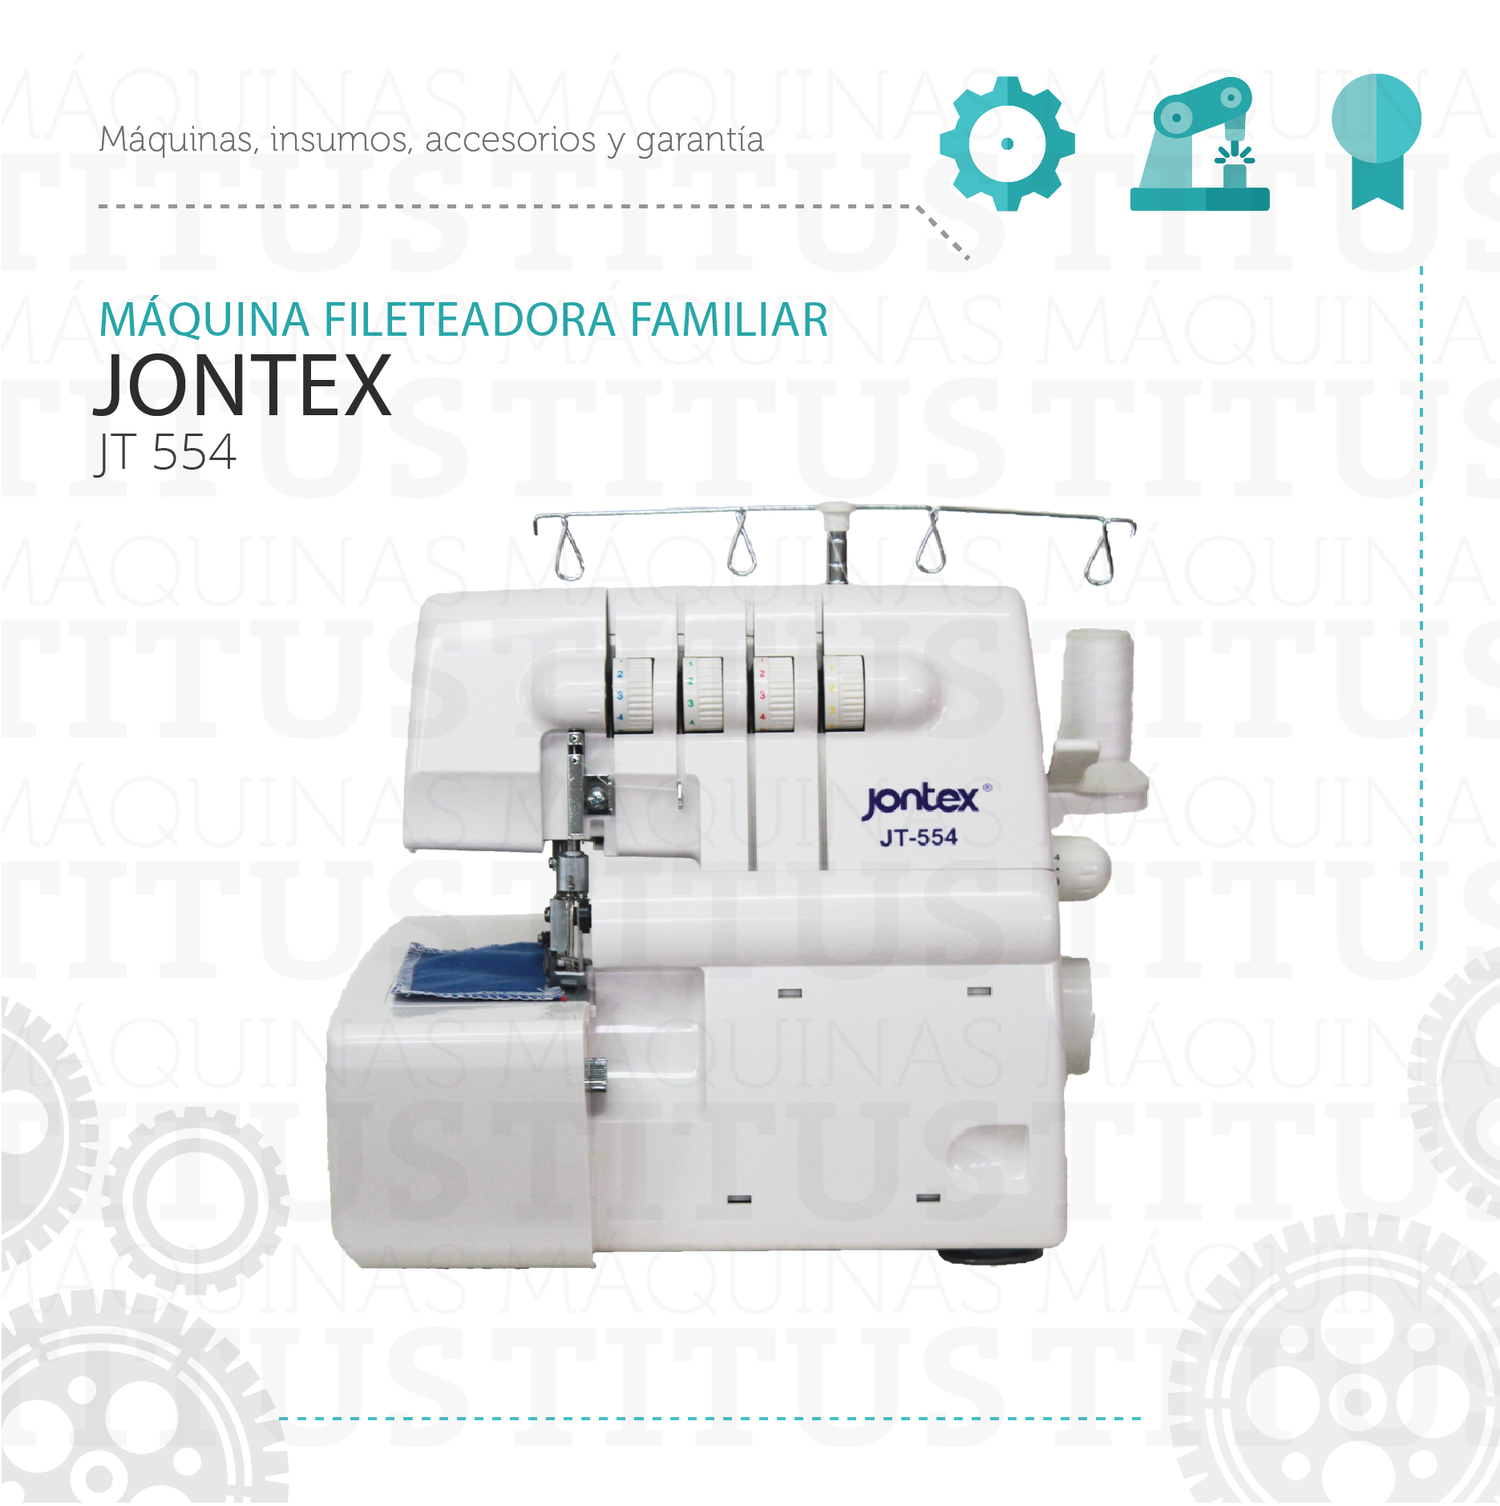 Fileteadora Familiar Jontex JT 554 Maquina De Coser - Commercio